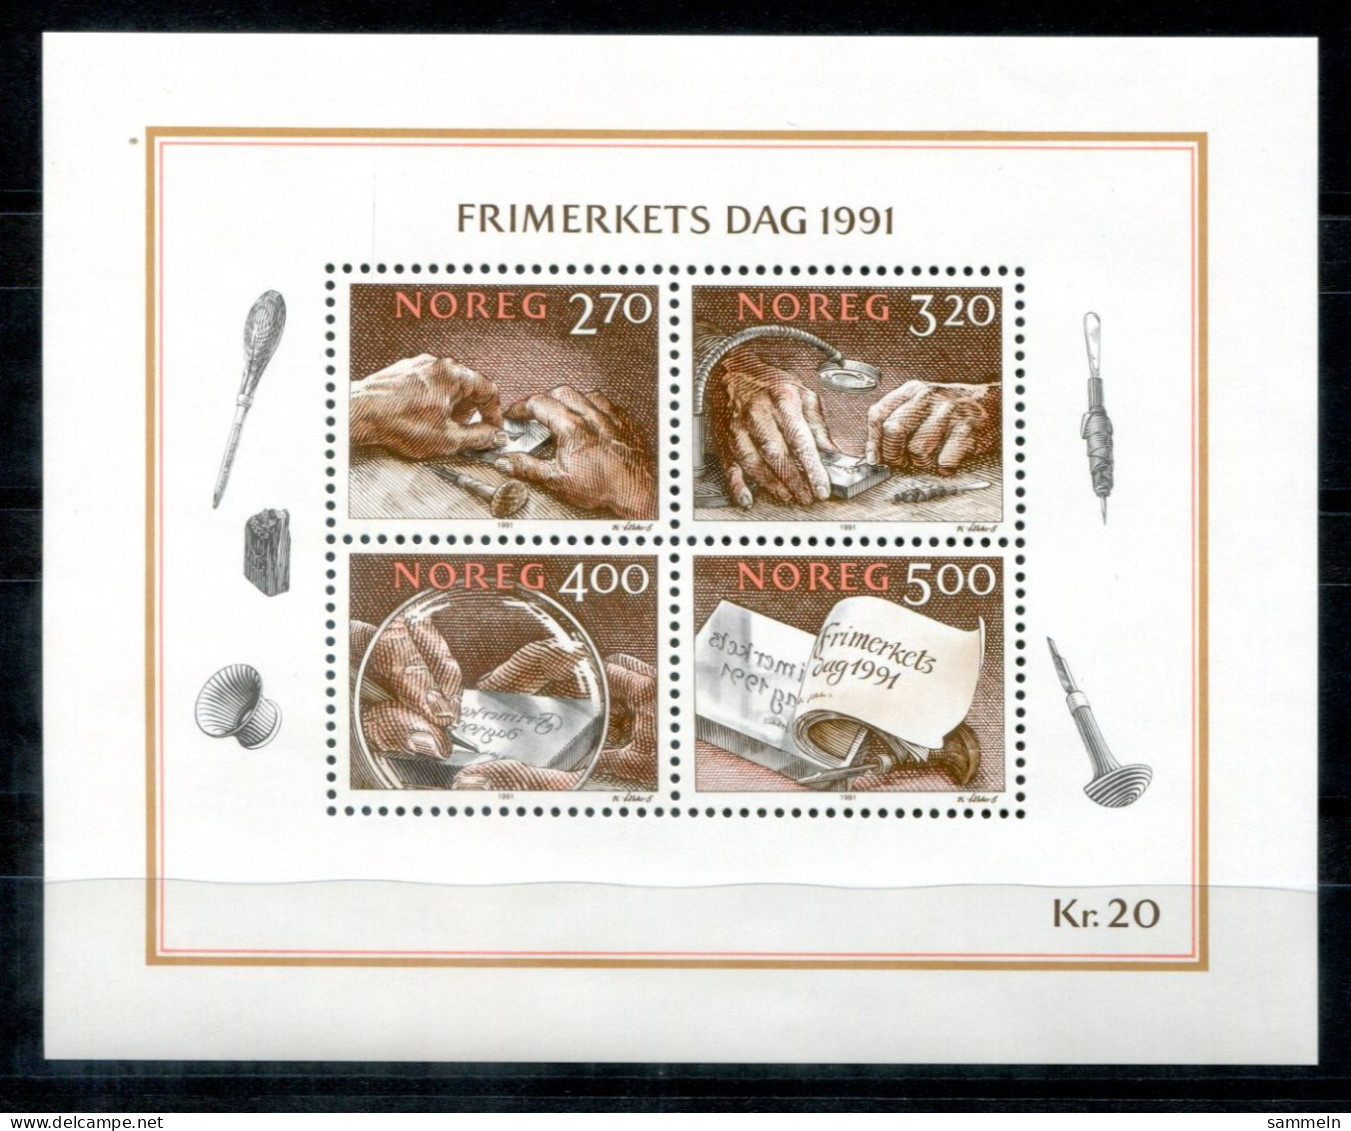 NORWEGEN - Block 15, Bl.15 Mnh - Tag Der Briefmarke, Day Of The Stamp, Jour Du Timbre - NORWAY / NORVÈGE - Blocks & Sheetlets